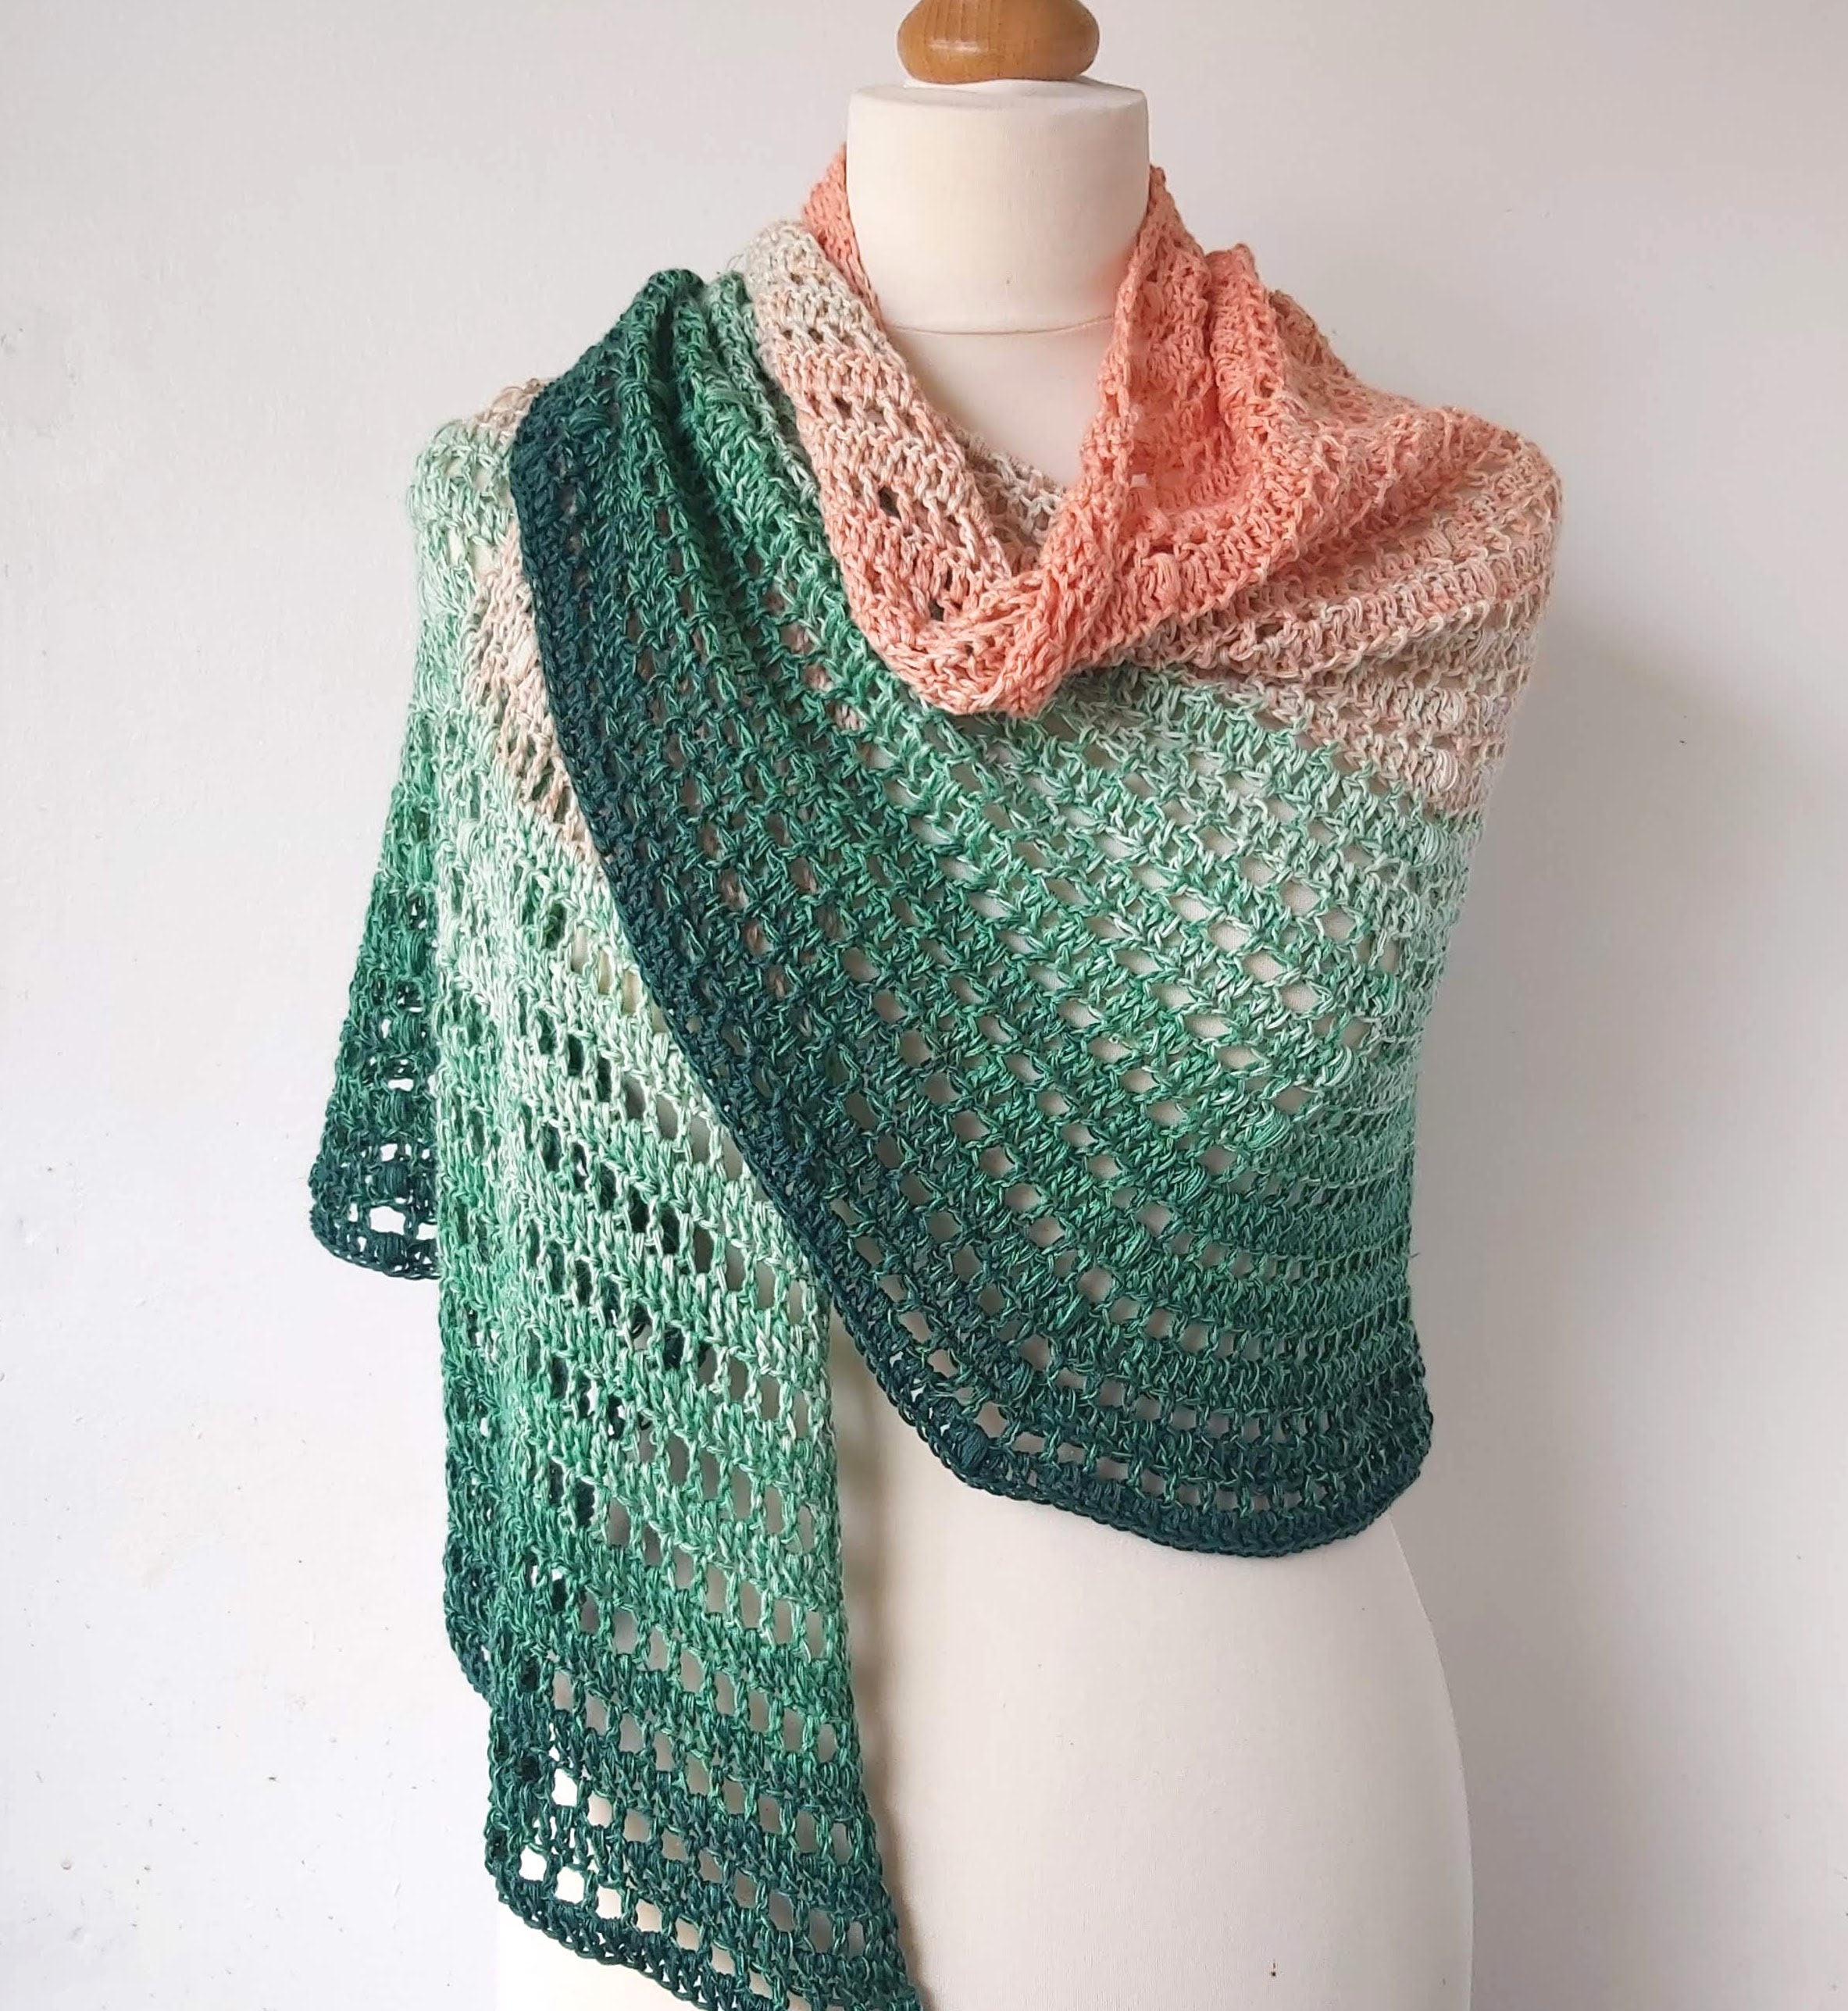 16 Shawl Mosaic Crochet Patterns – Crochet